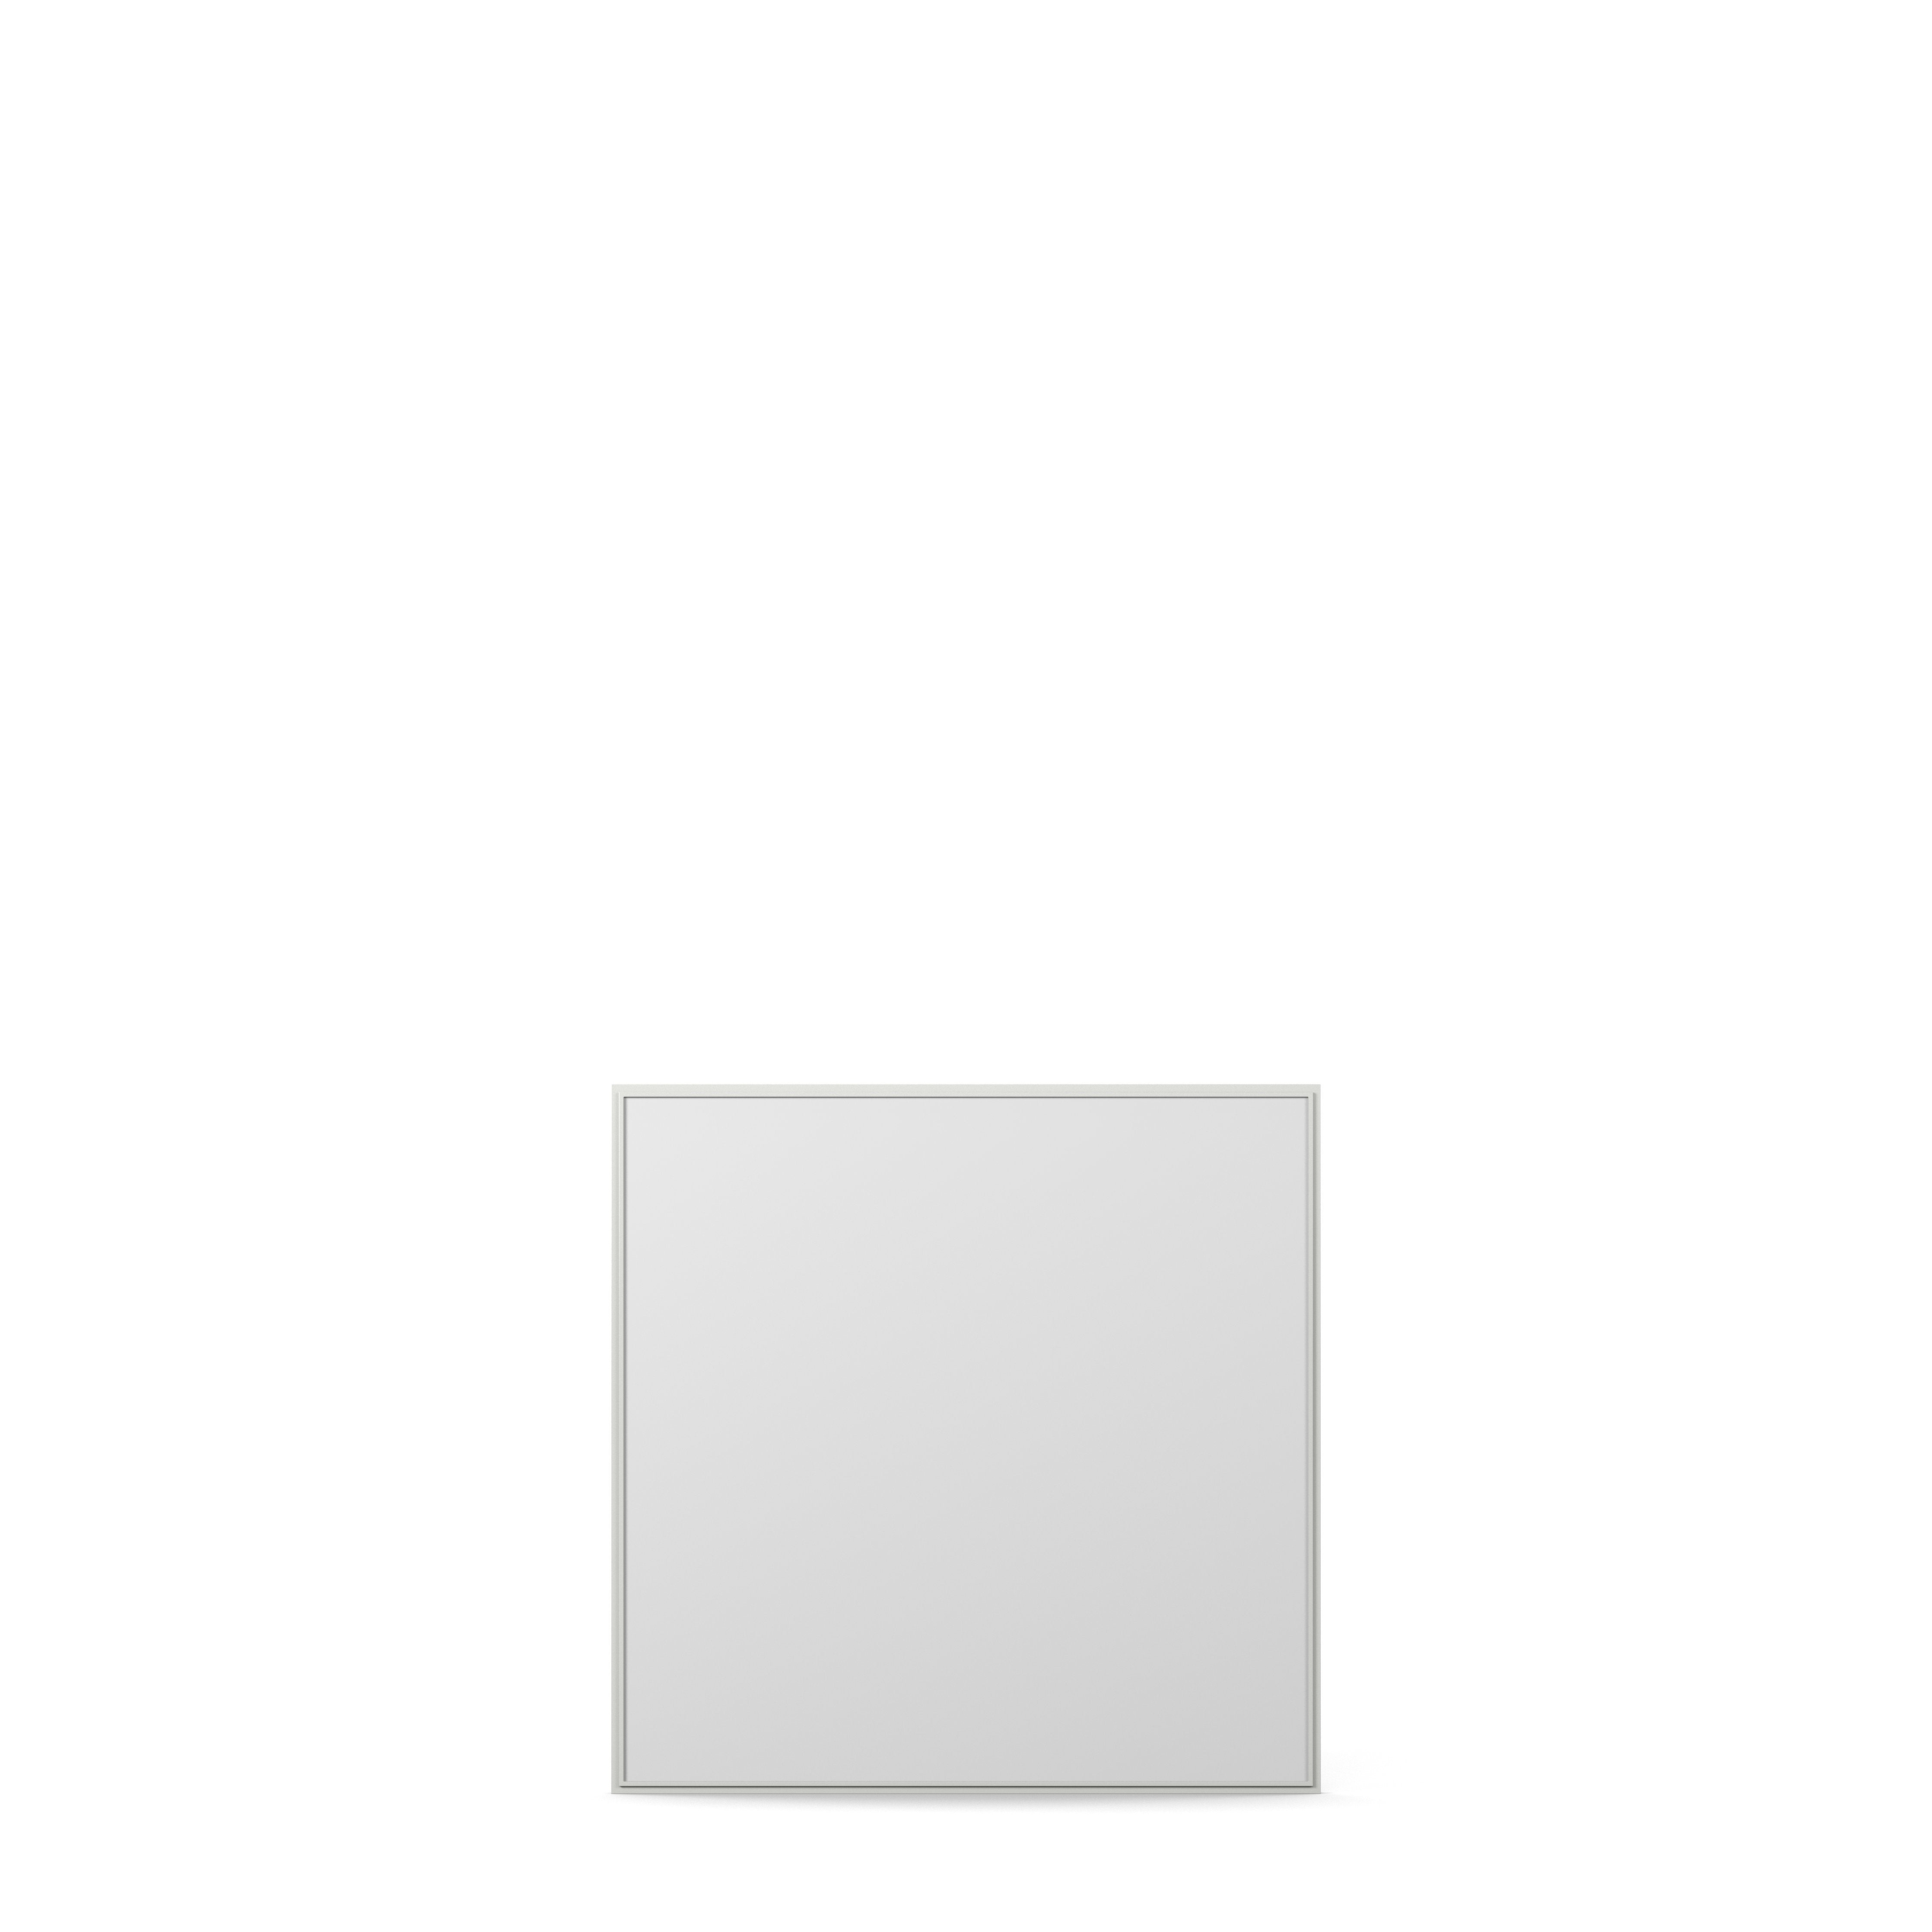 Englesson Speglar Edge White Cube Spegel Kvadratisk 830D #färg_Edge White